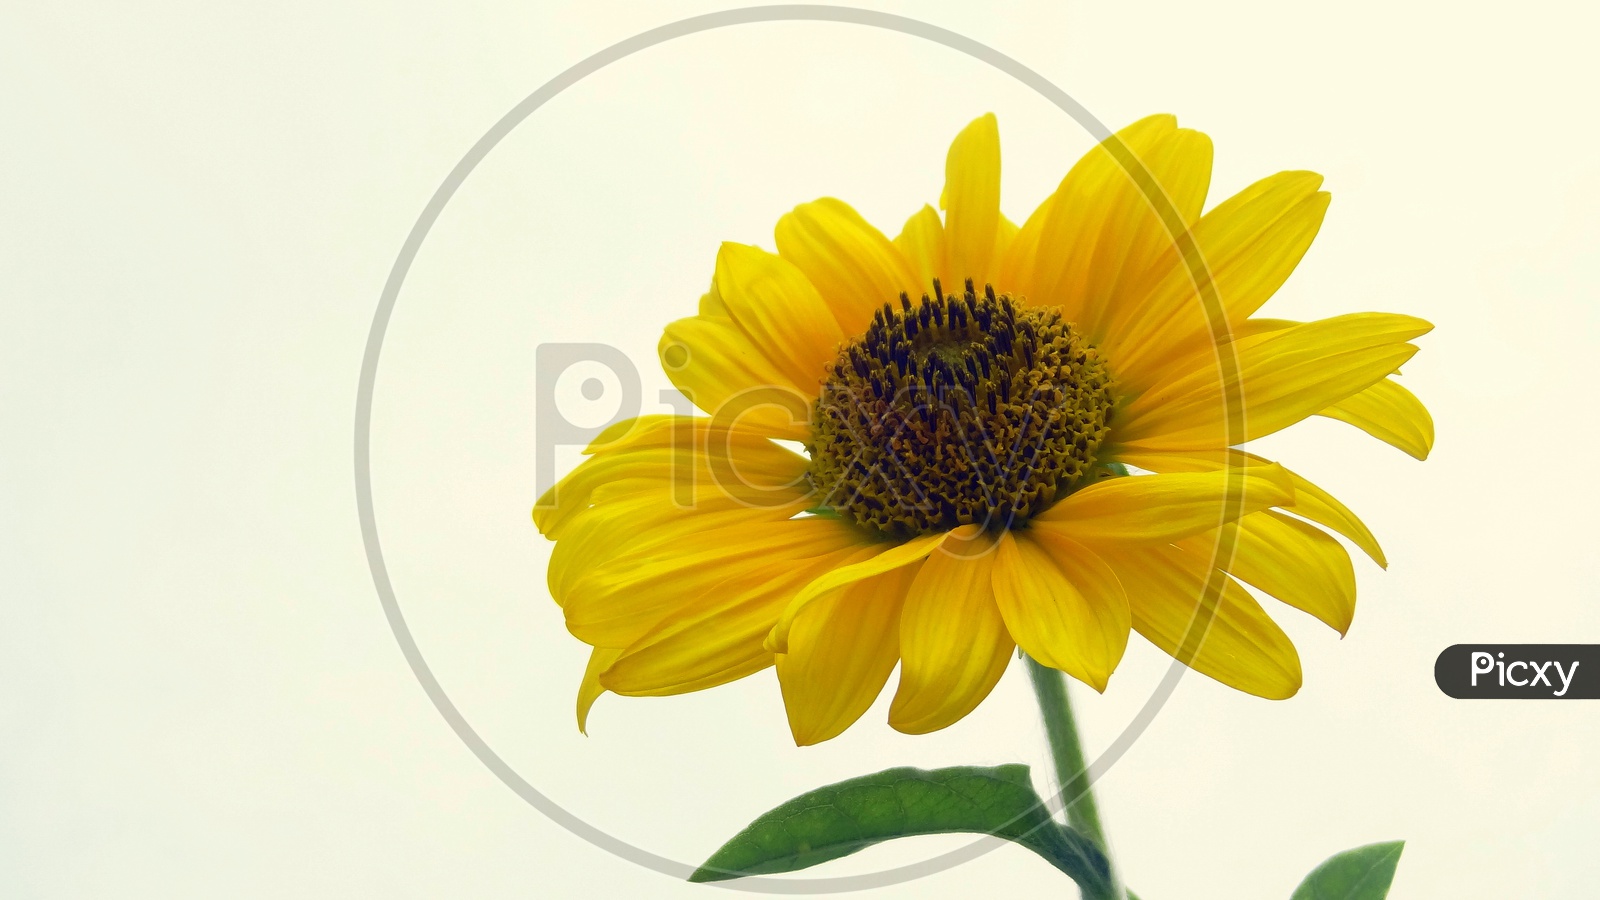 A Sun flower!